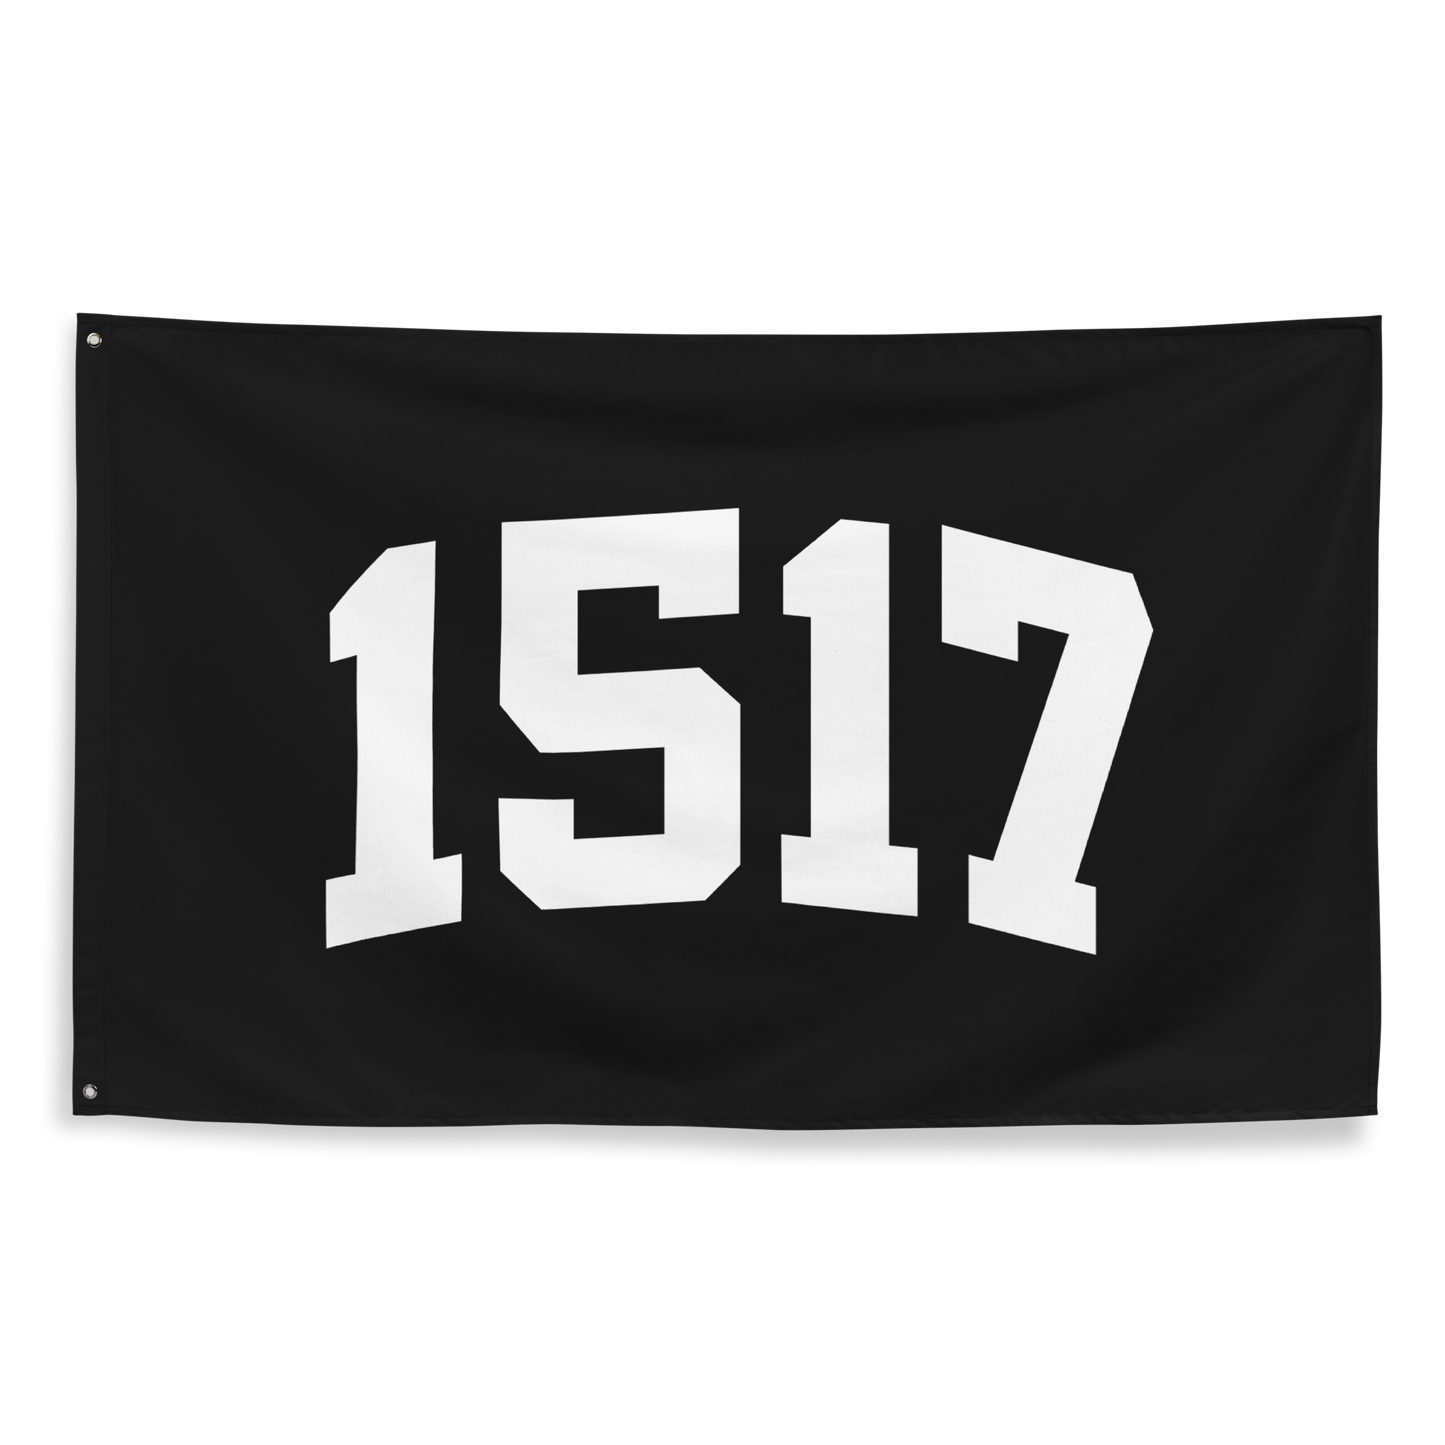 1517 Flag